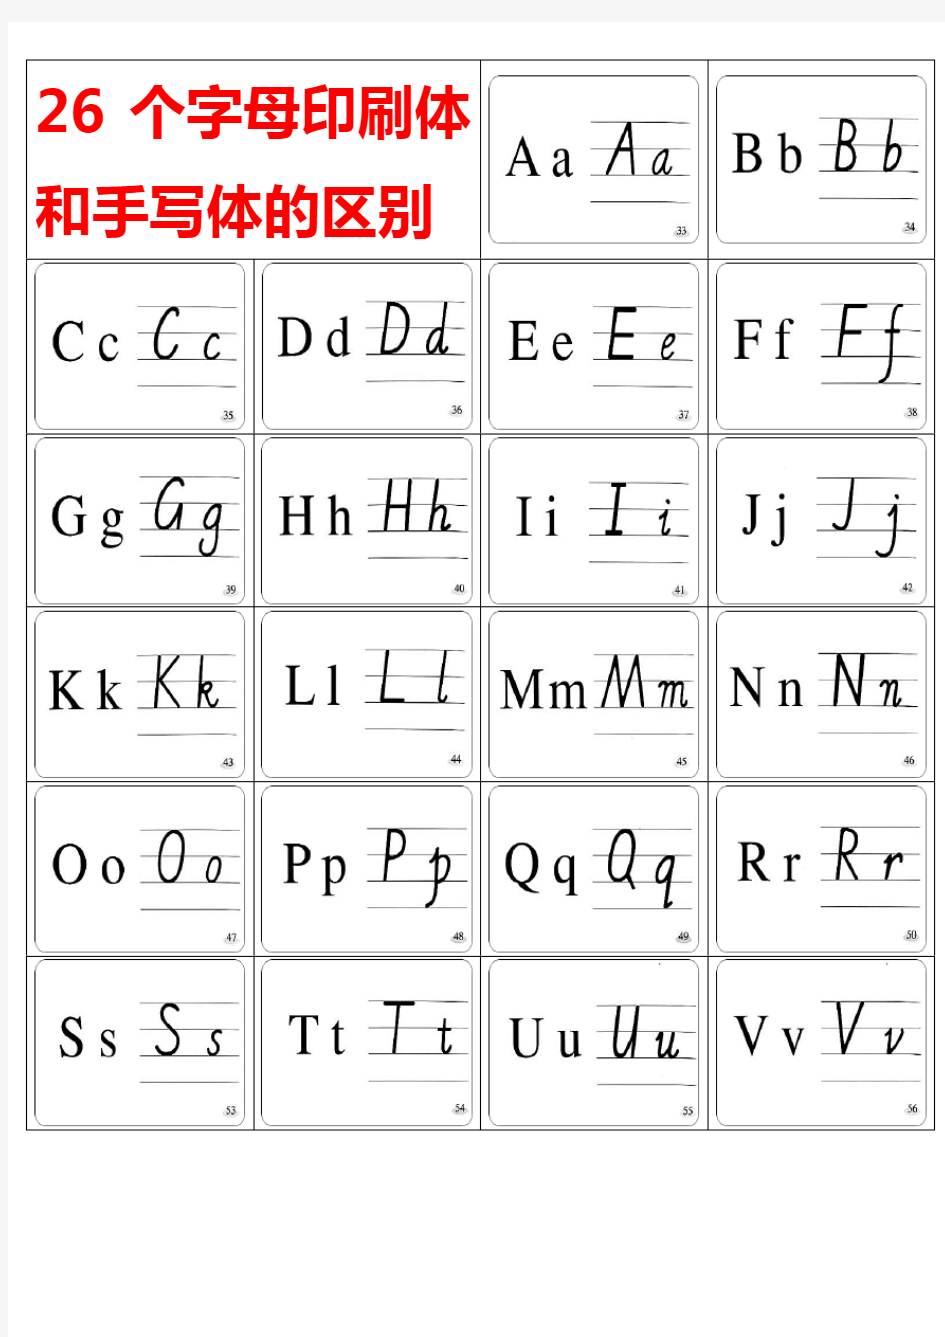 6个英文字母印刷体与手写体对照表及练习